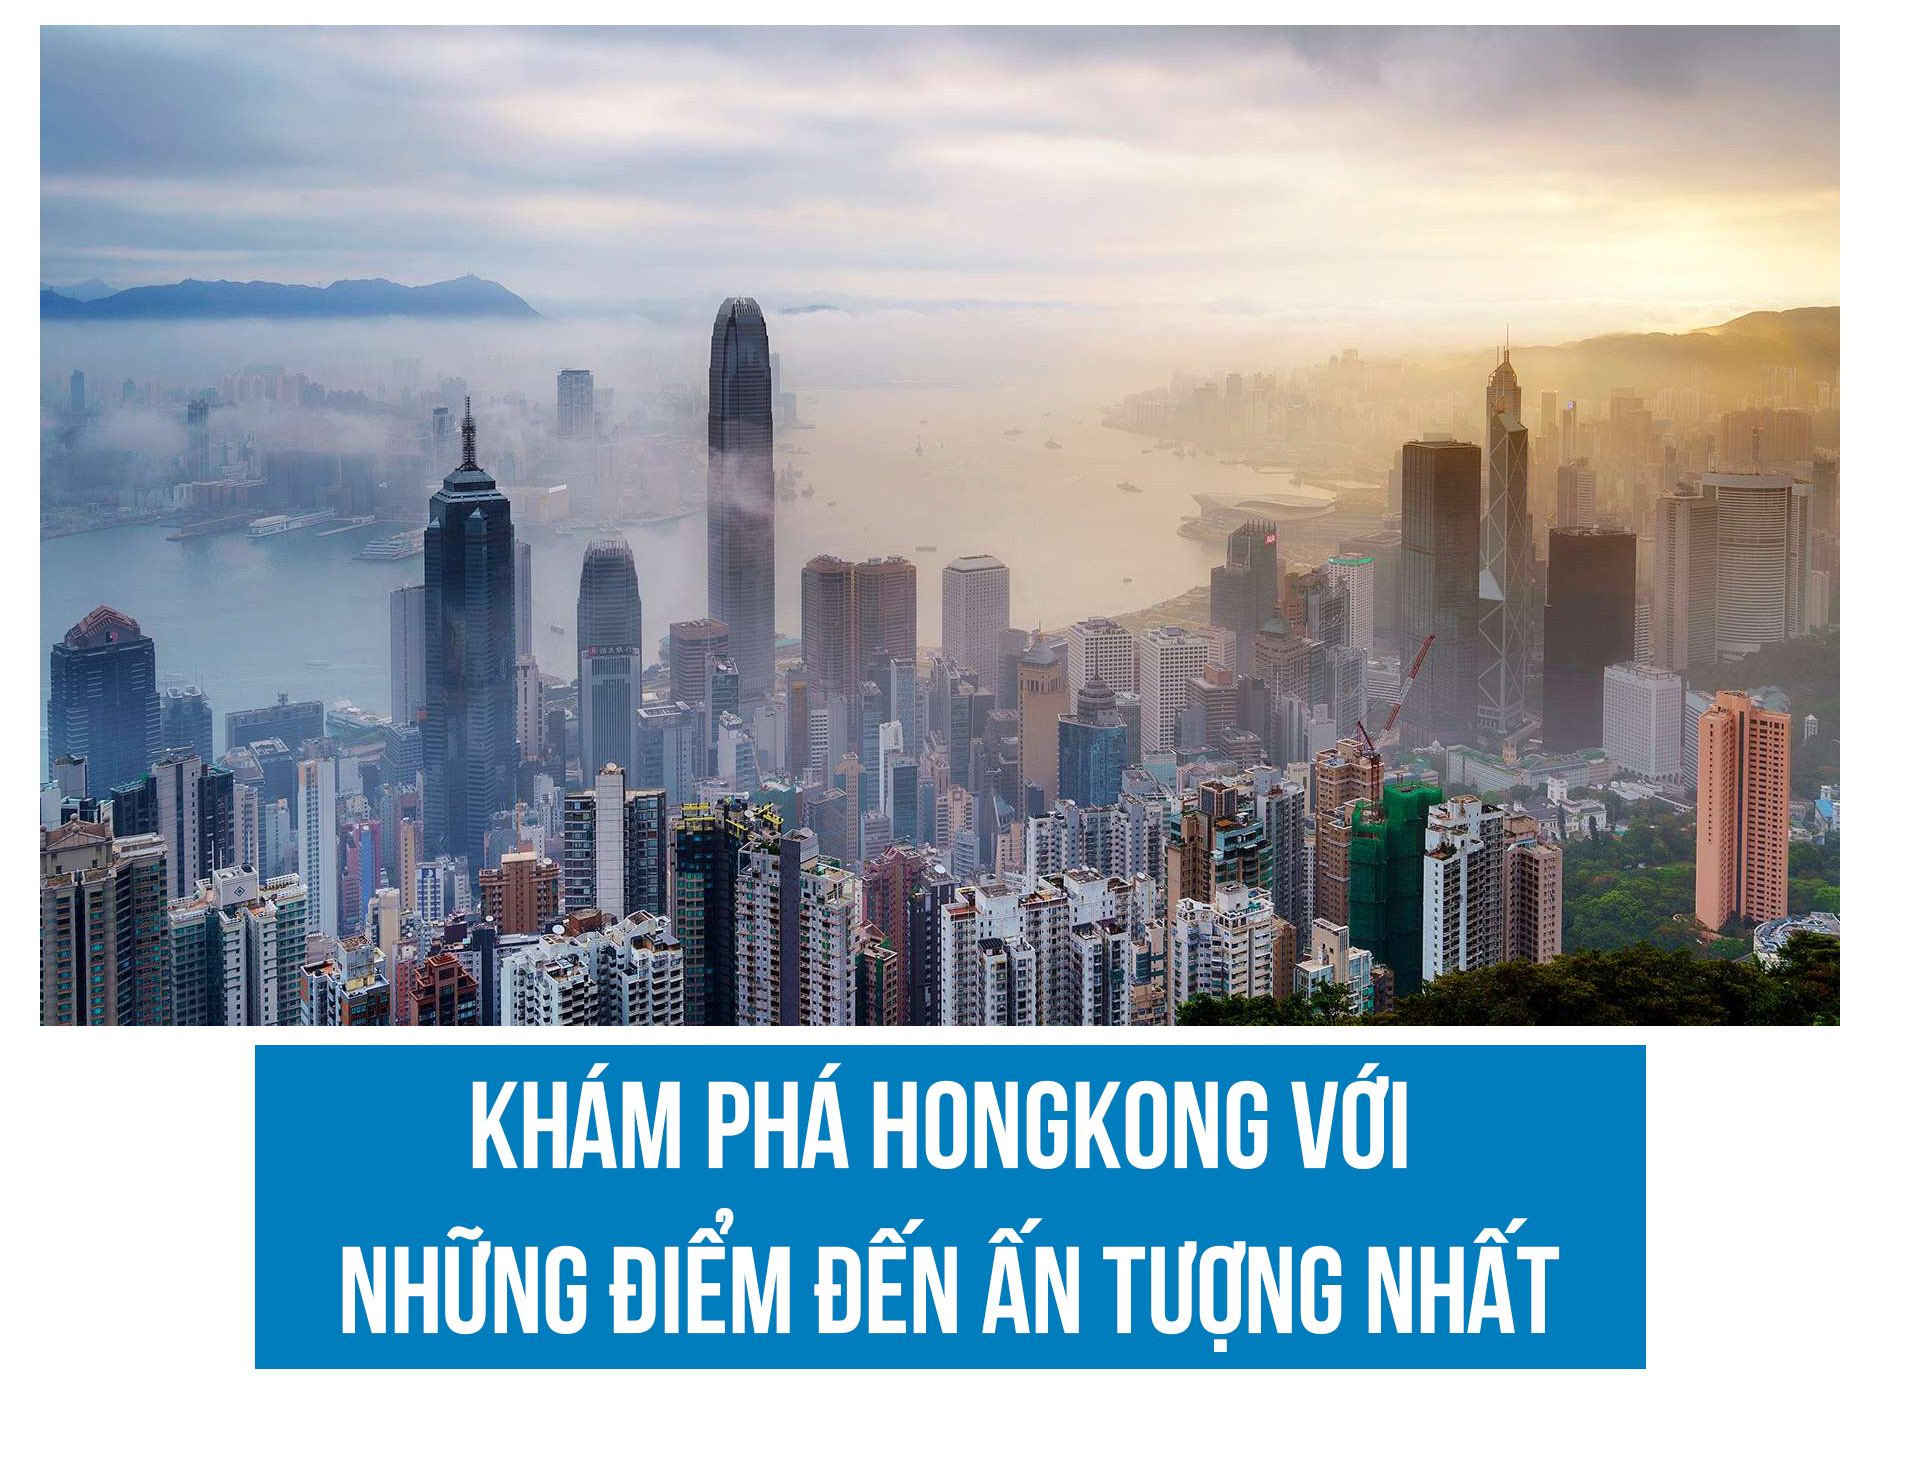 Khám phá Hồng Kông với những điểm đến ấn tượng nhất - 1